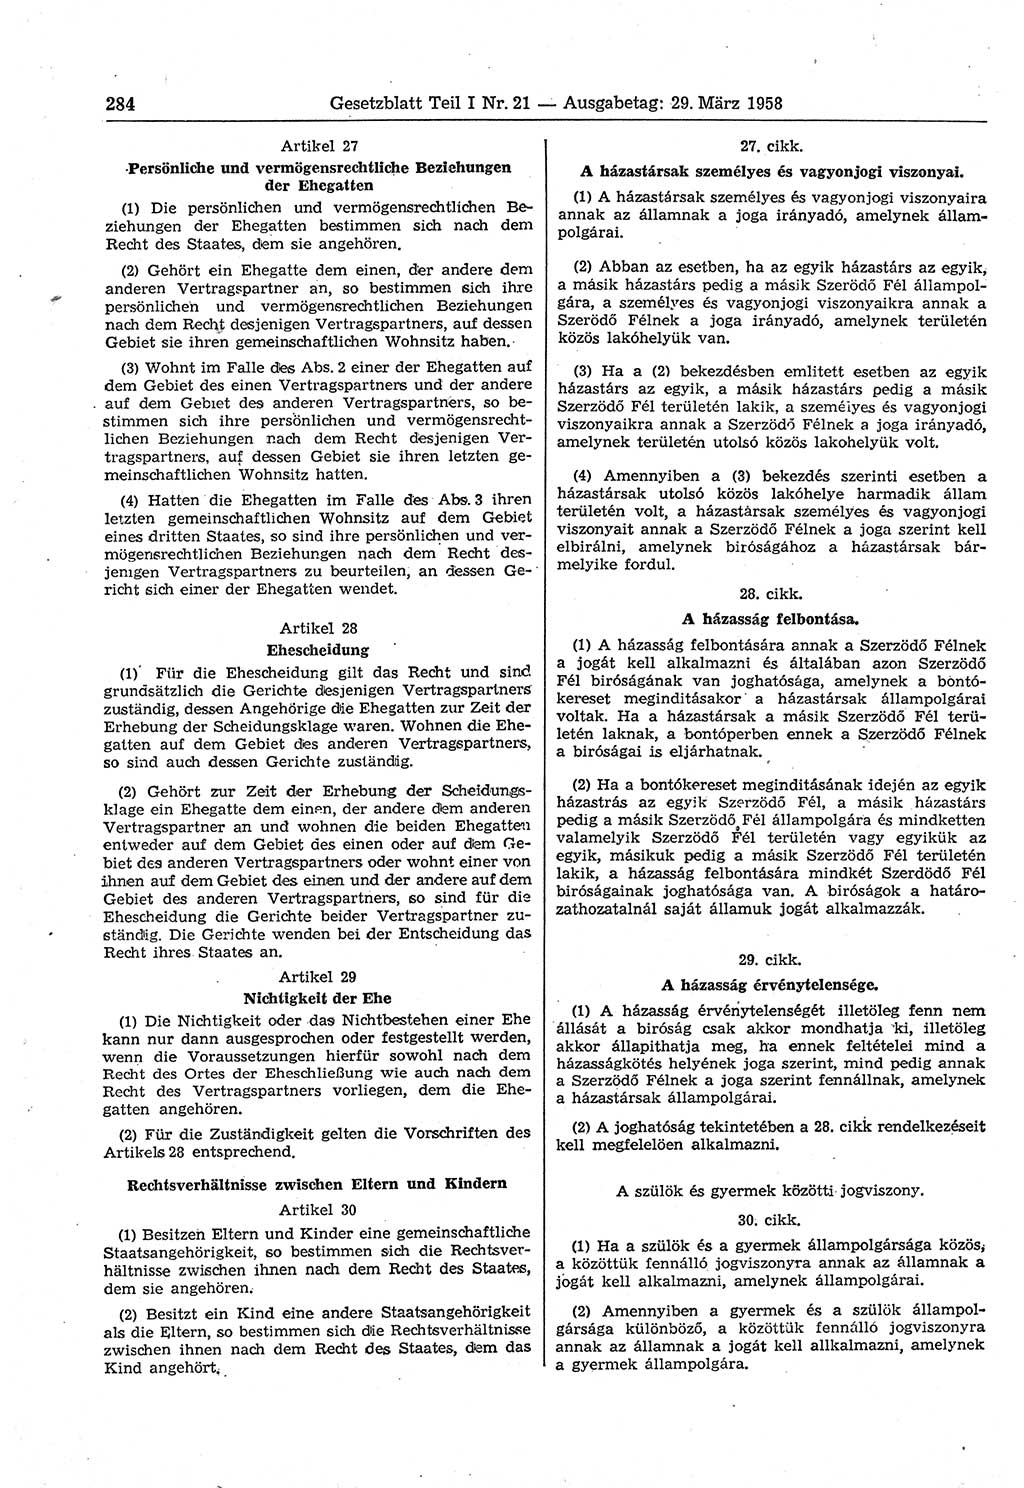 Gesetzblatt (GBl.) der Deutschen Demokratischen Republik (DDR) Teil Ⅰ 1958, Seite 284 (GBl. DDR Ⅰ 1958, S. 284)